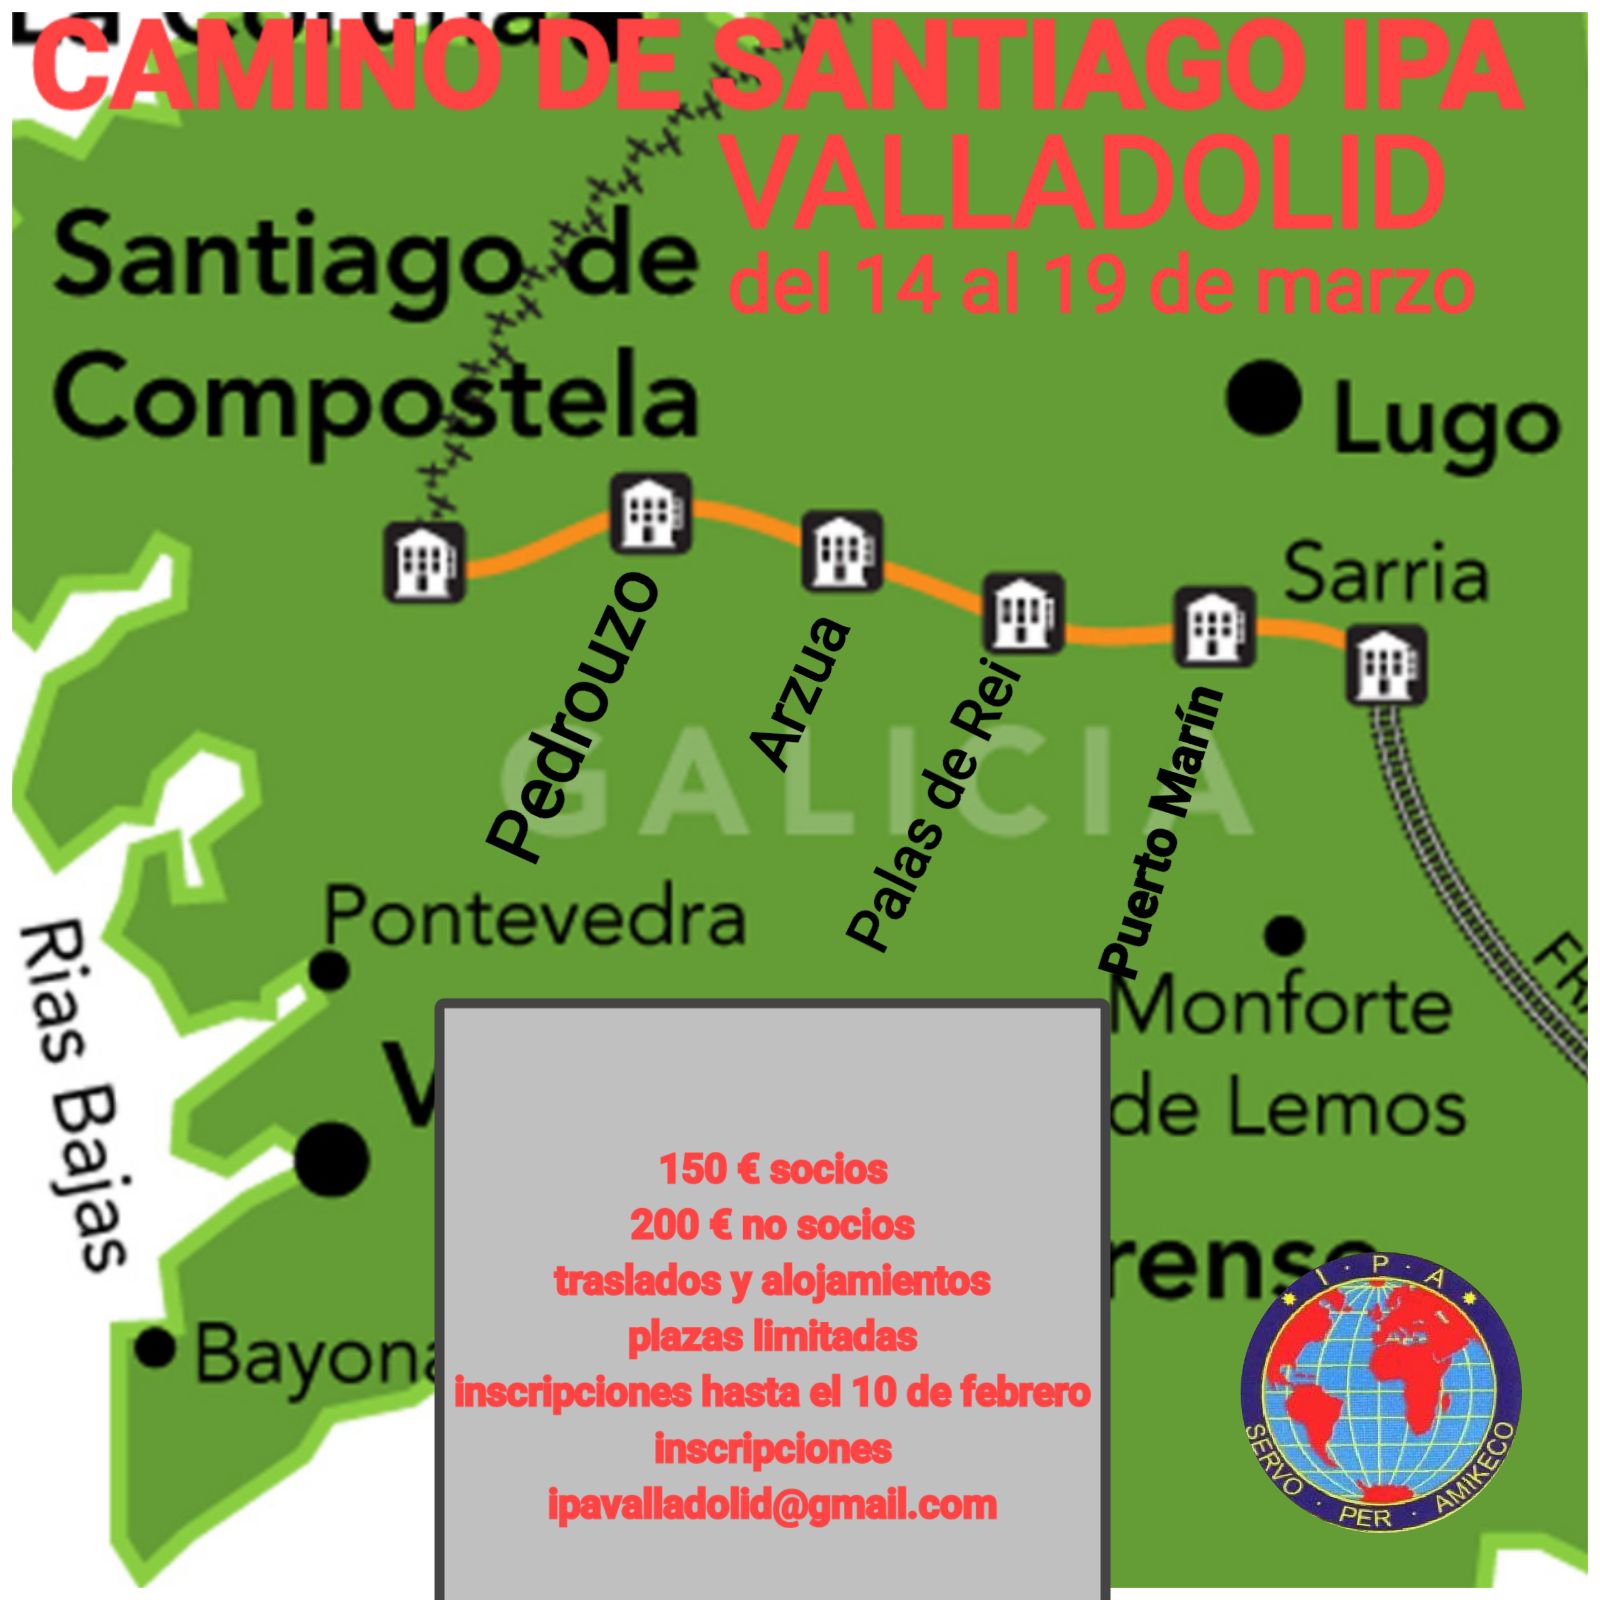 Camino Santiago 2018